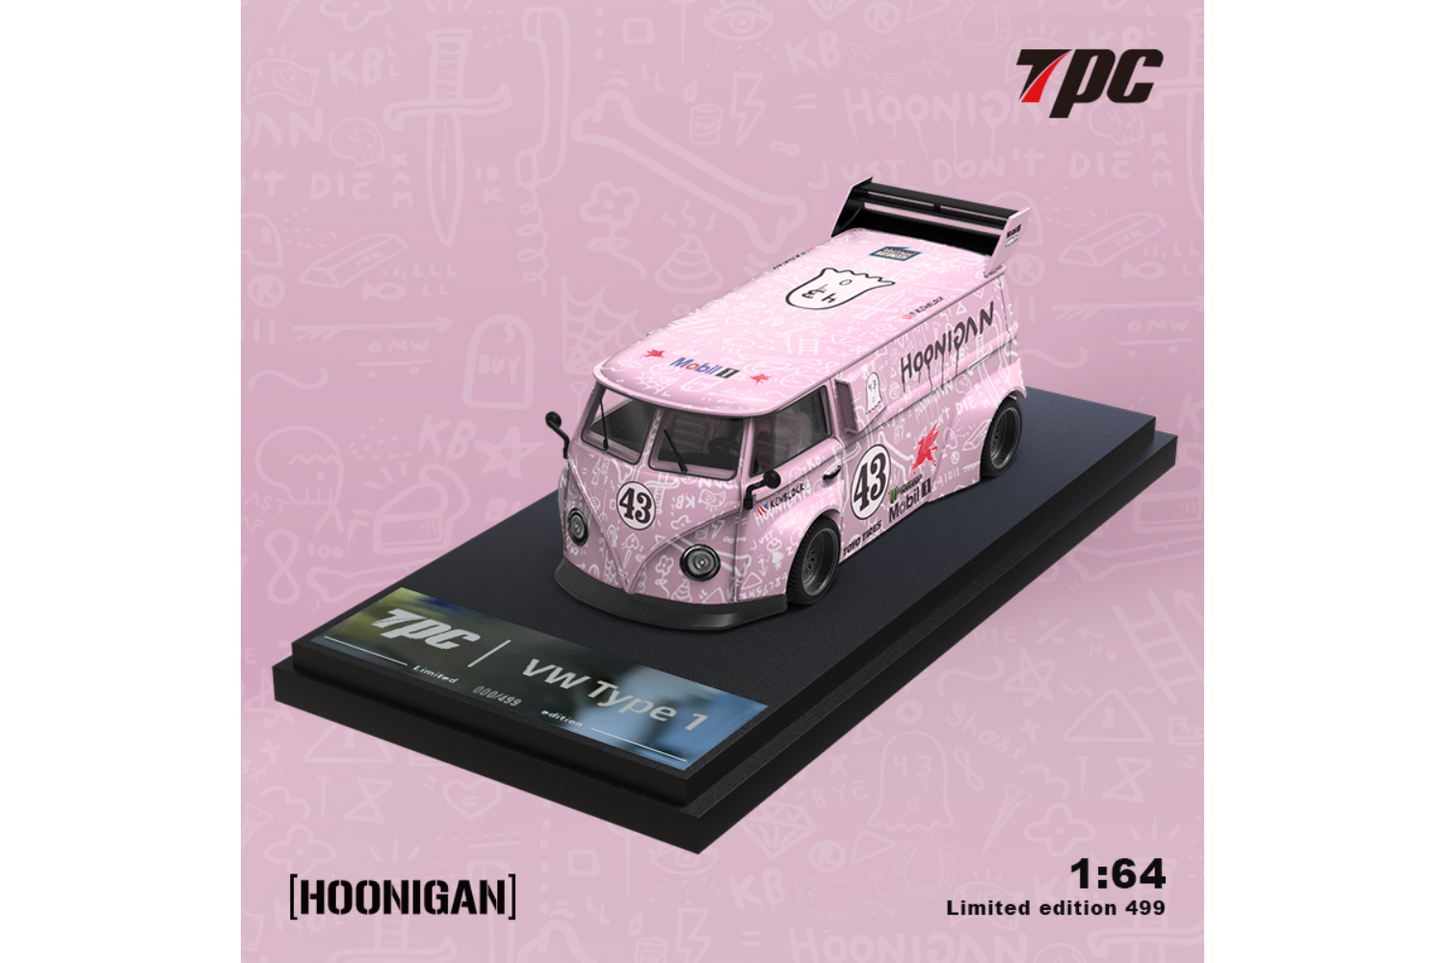 TPC 1/64 RWB VW T1 Van and Porsche 992 GT3 RS Trailer Set in Pink "Hoon" Livery